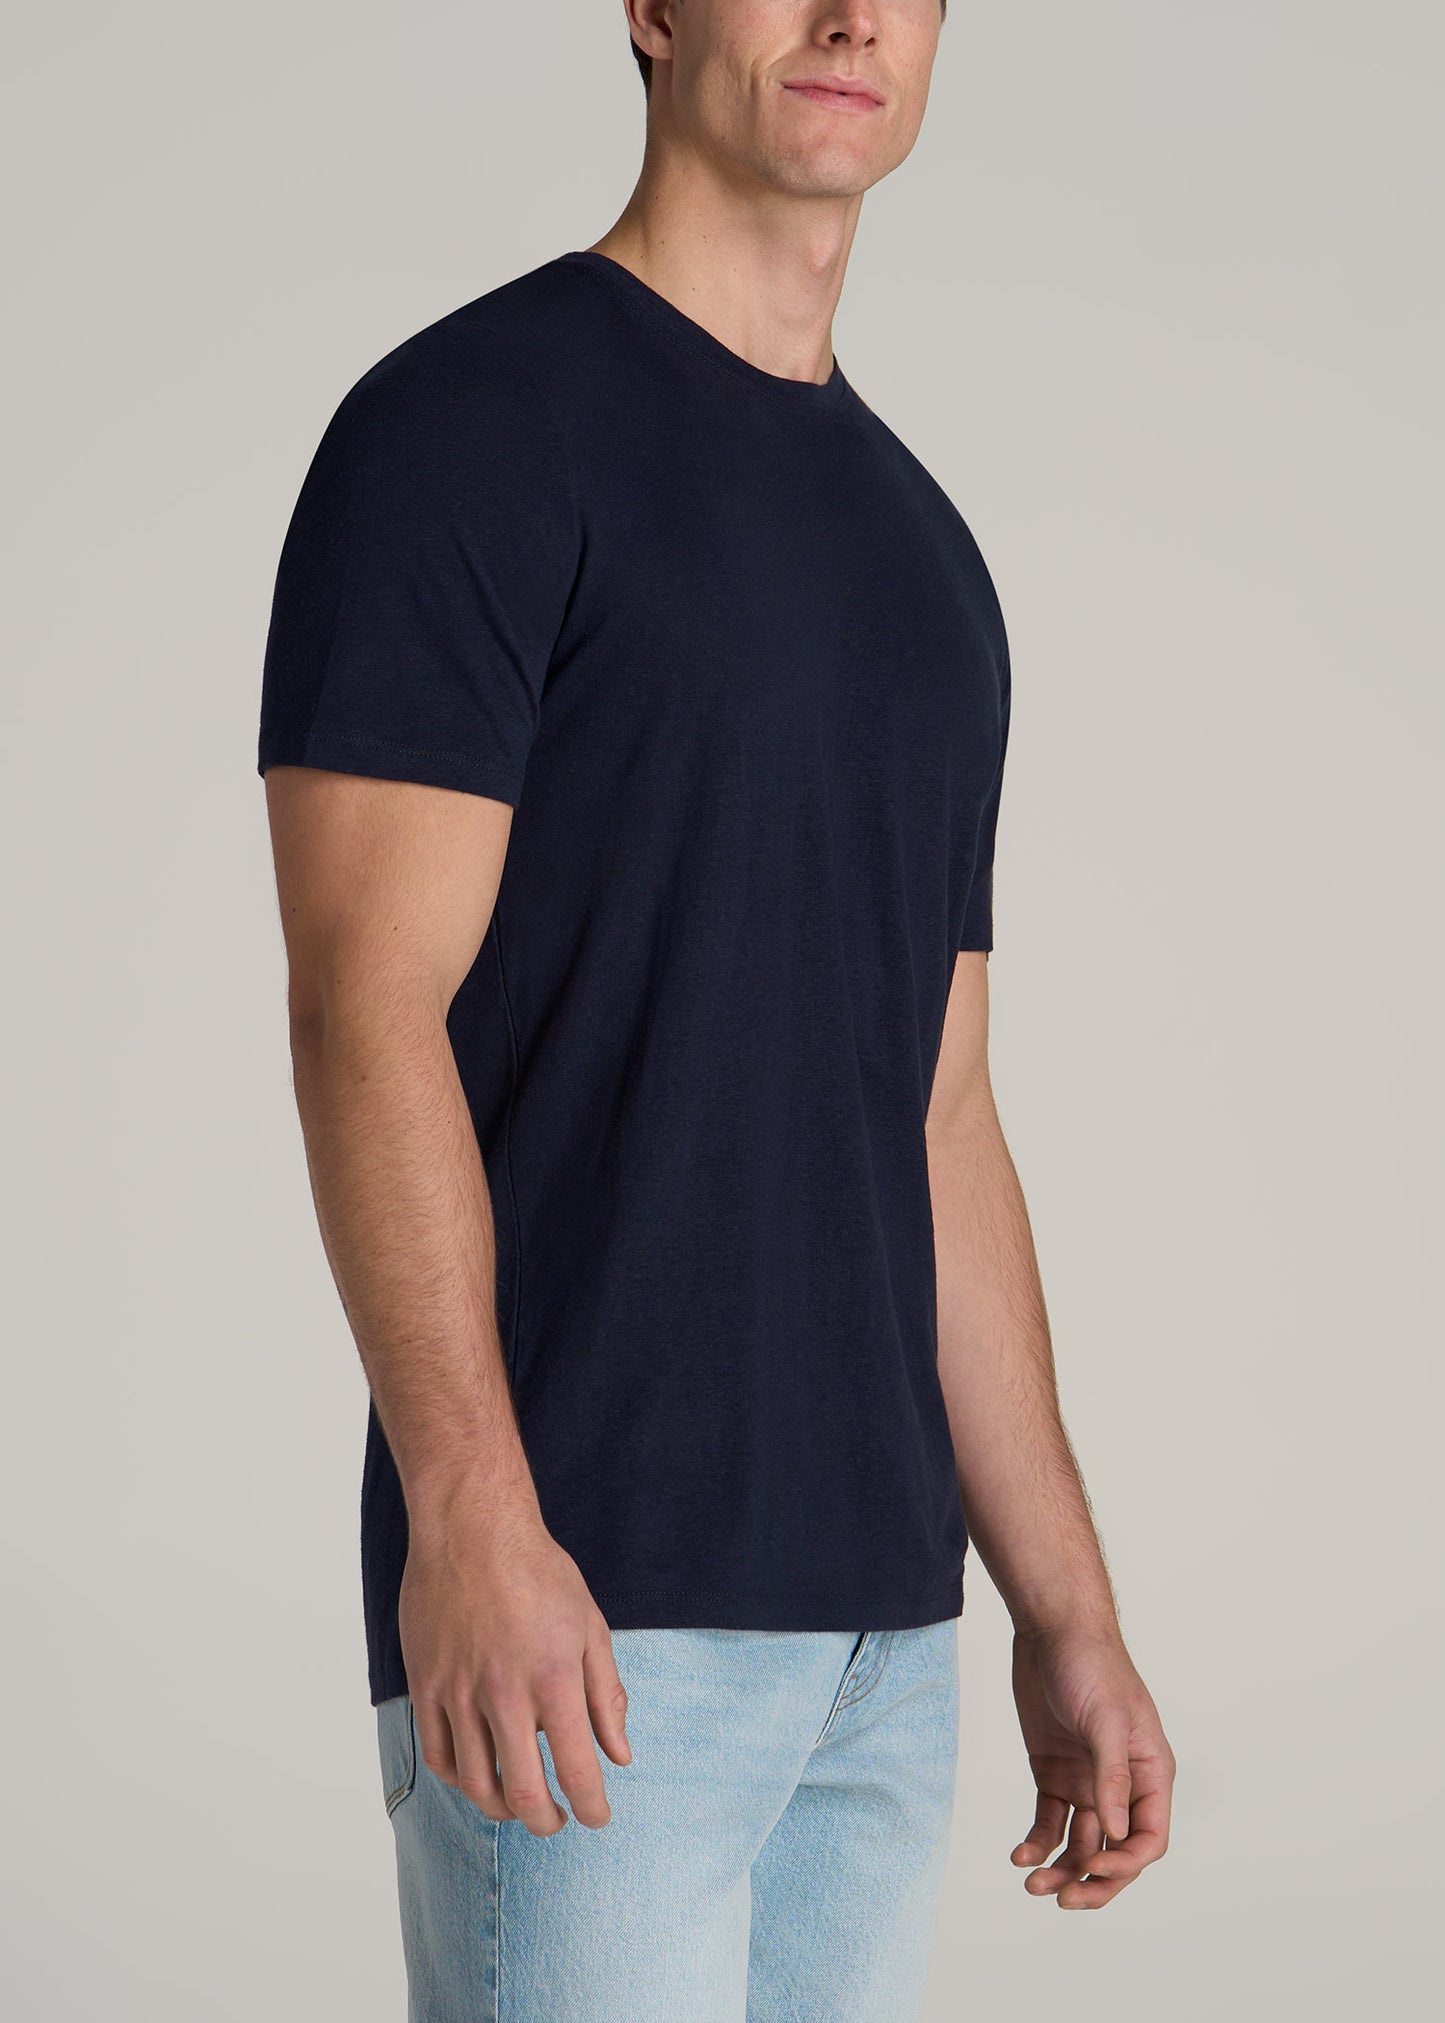 Linen Crewneck T-Shirt for Tall Men in Evening Blue